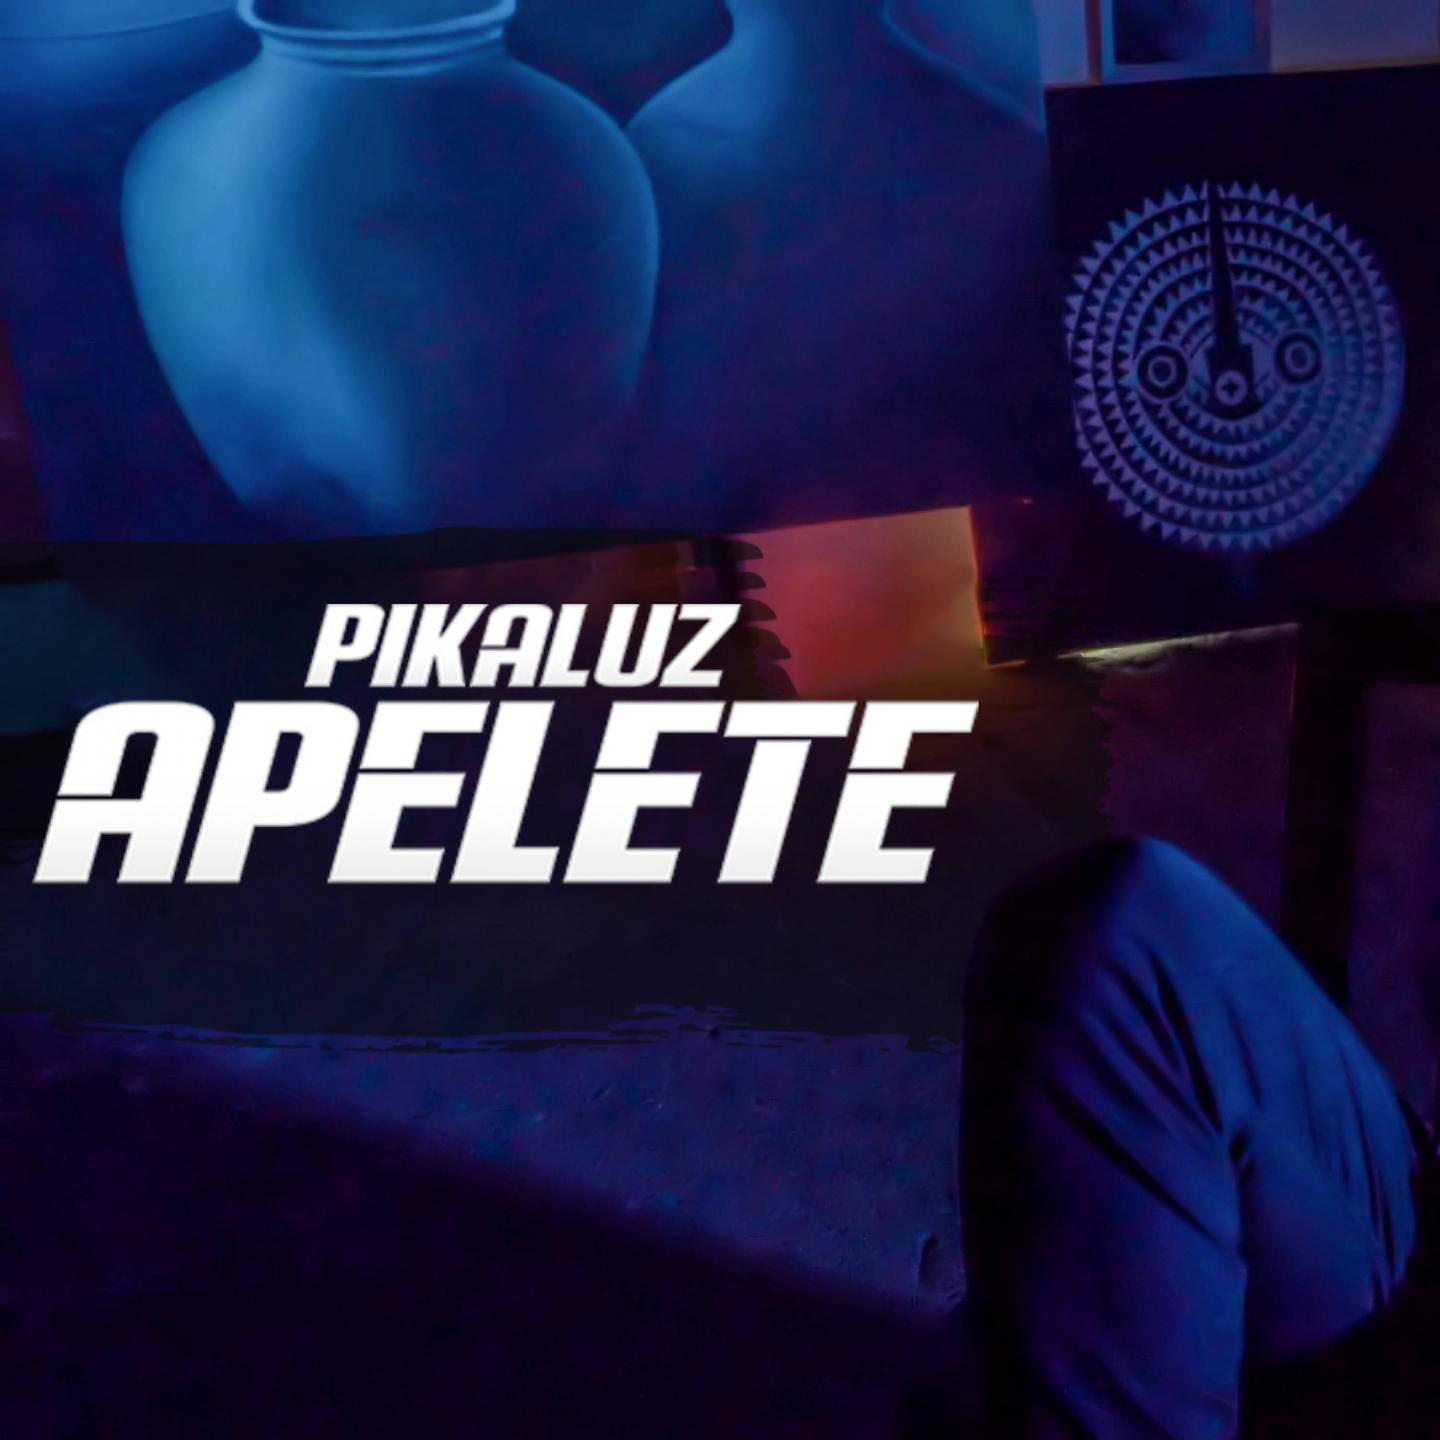 Постер альбома Apelete